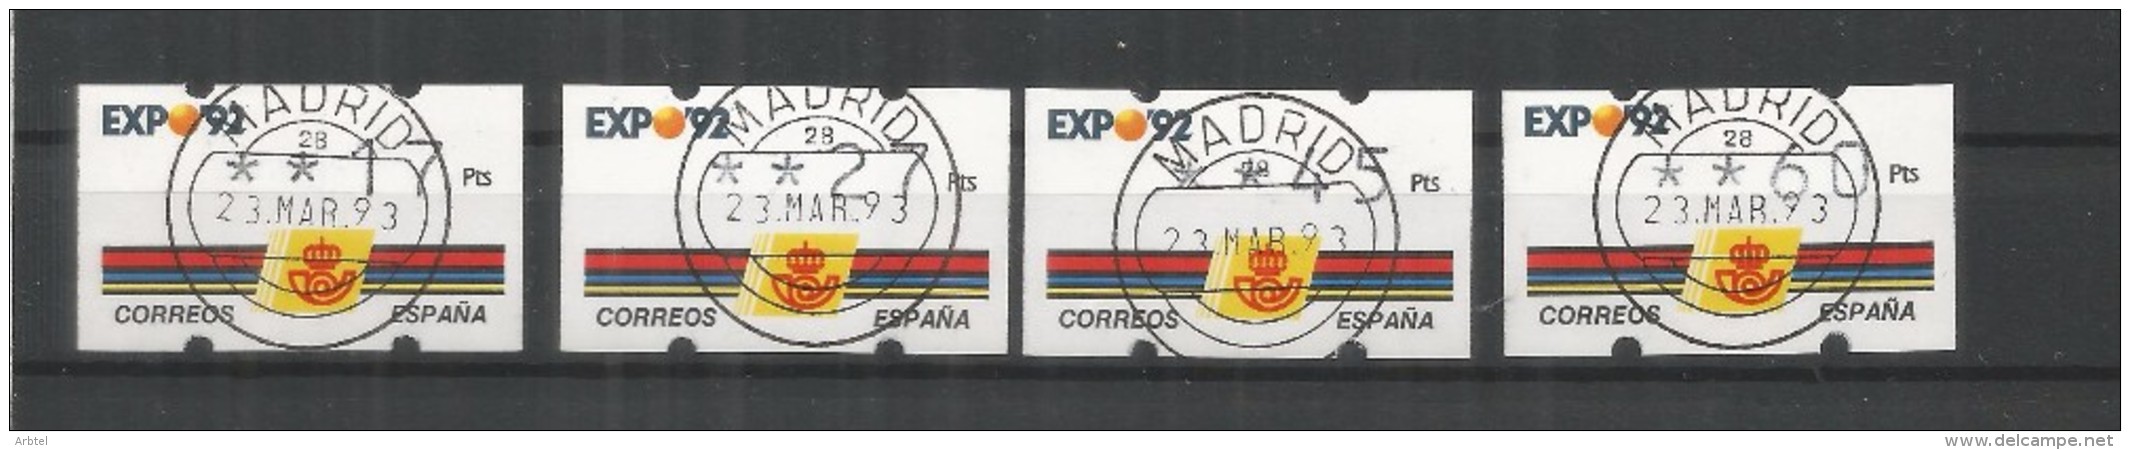 ATM KLUSENDORF EXPO 92 4 DIGITOS 4 VALORES CON MATASELLOS - 1992 – Séville (Espagne)